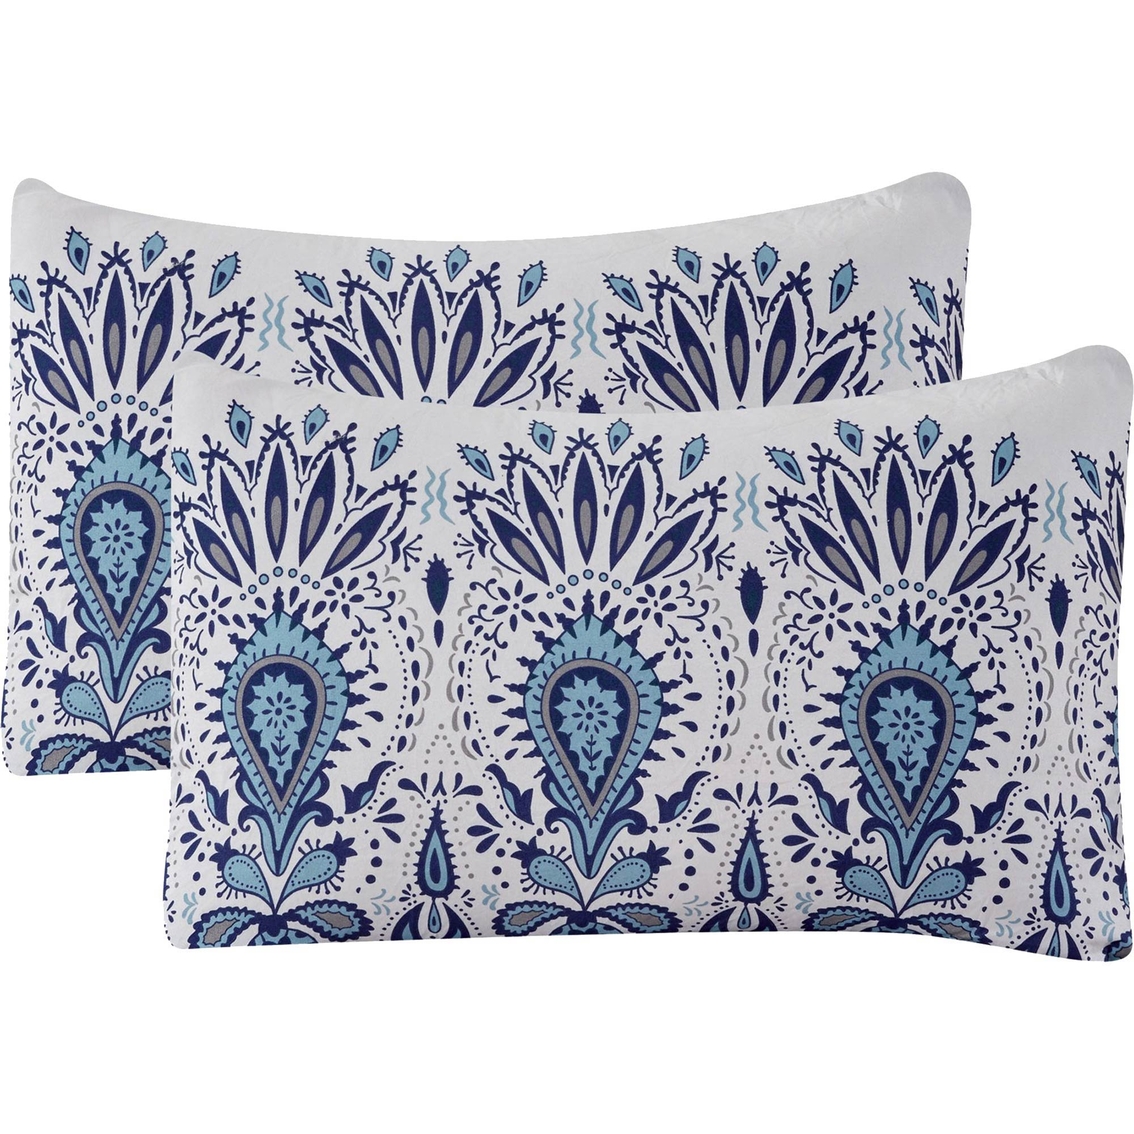 Modern Threads Karina Embellished Comforter Set - Image 6 of 7